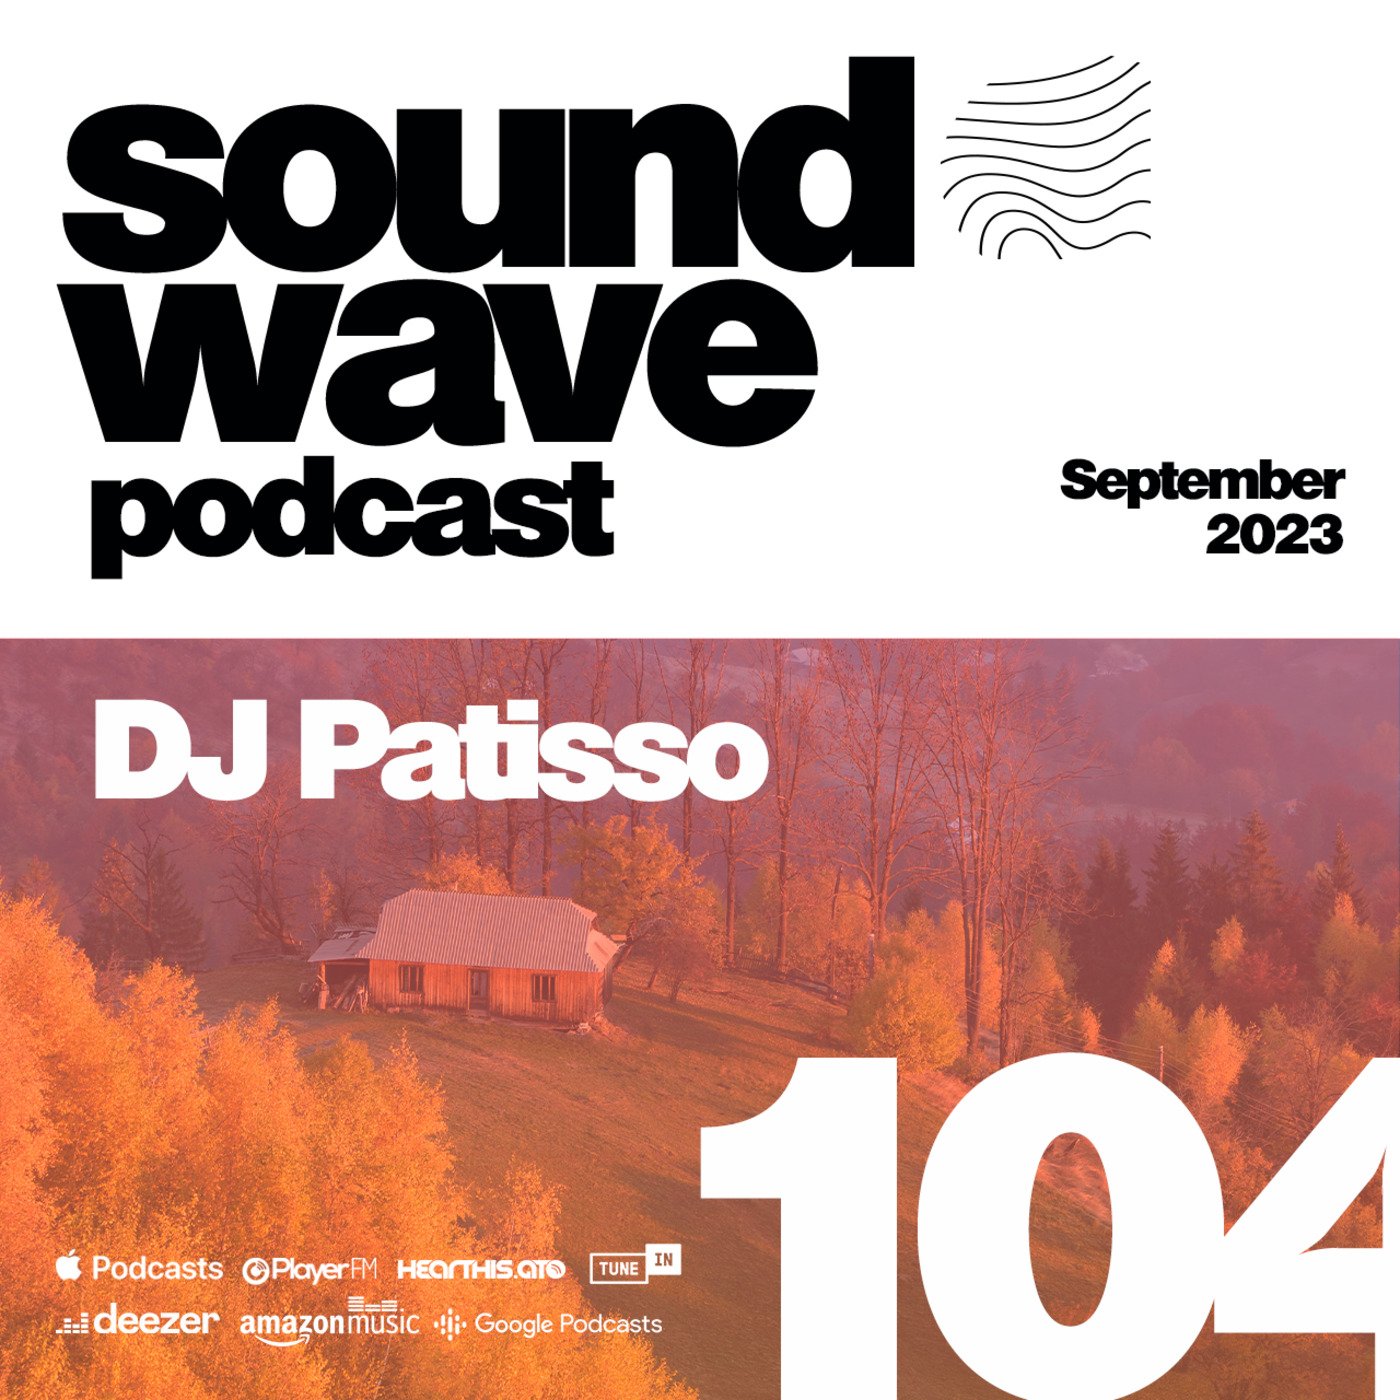 DJ Patisso - Sound Wave Podcast 104